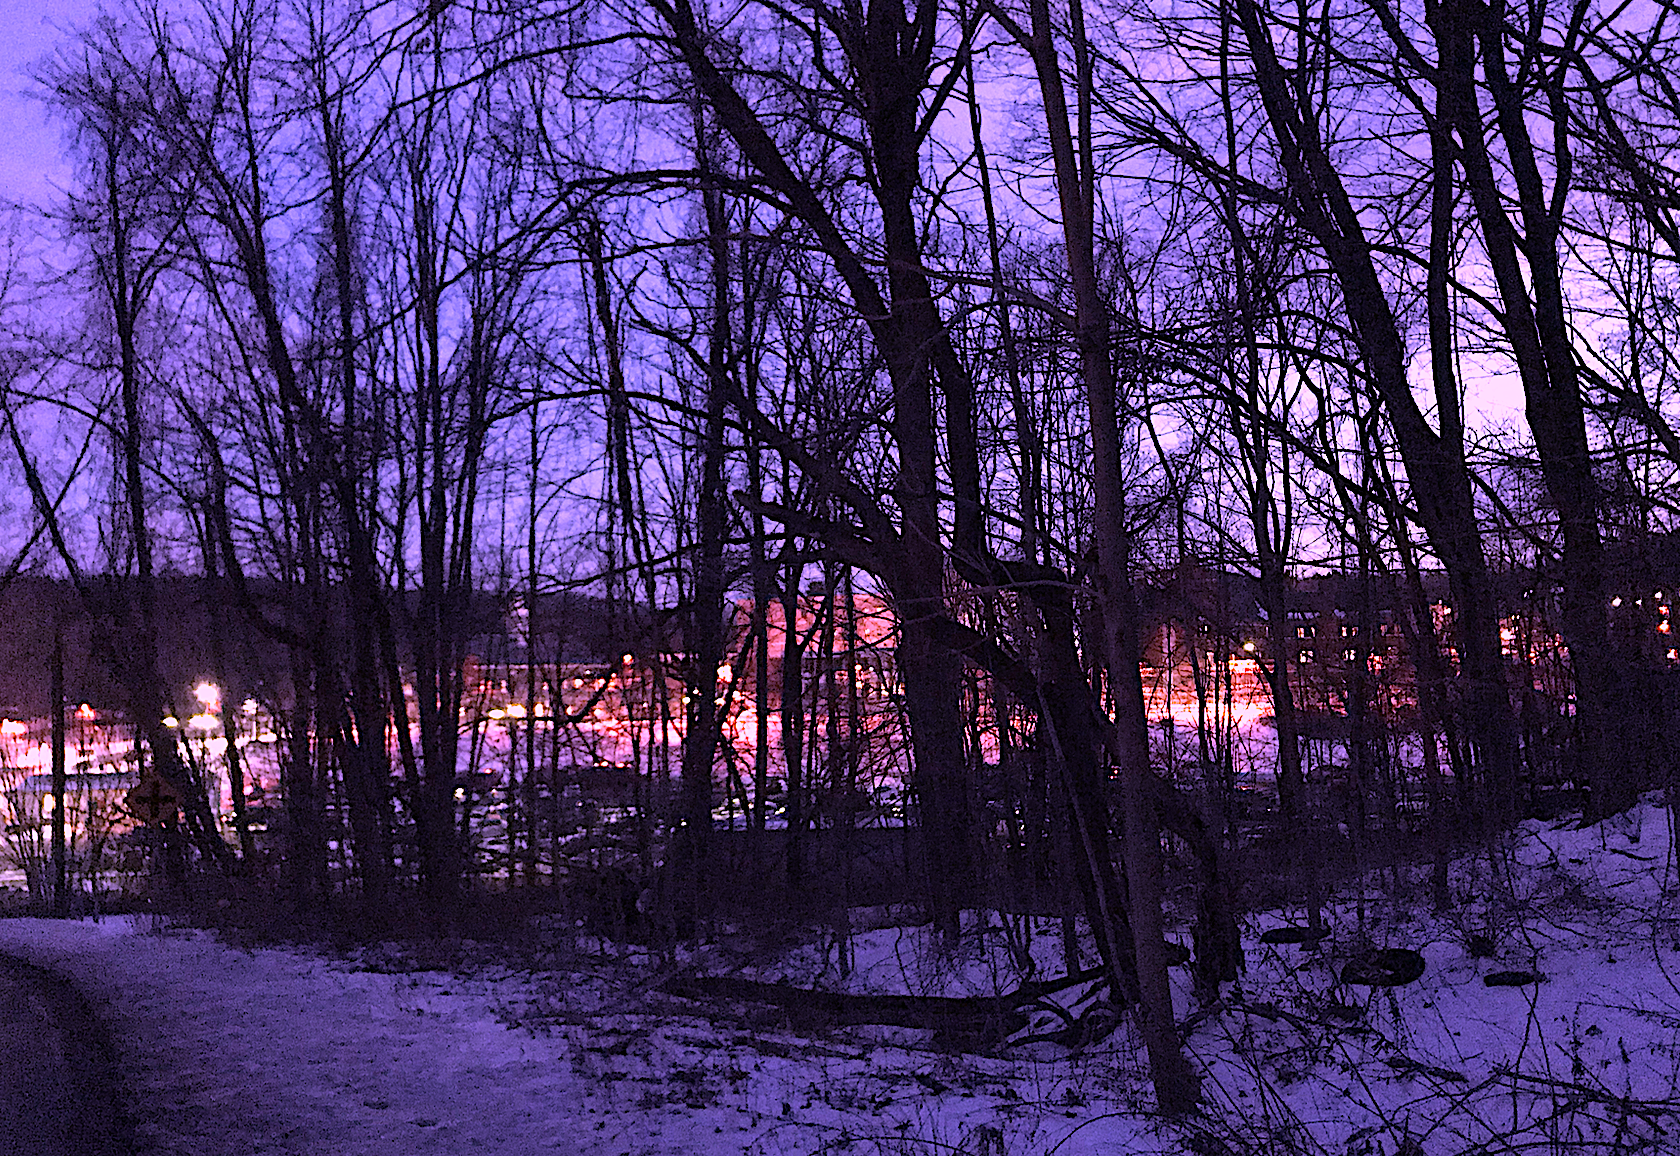 Bedford at night purplish.png